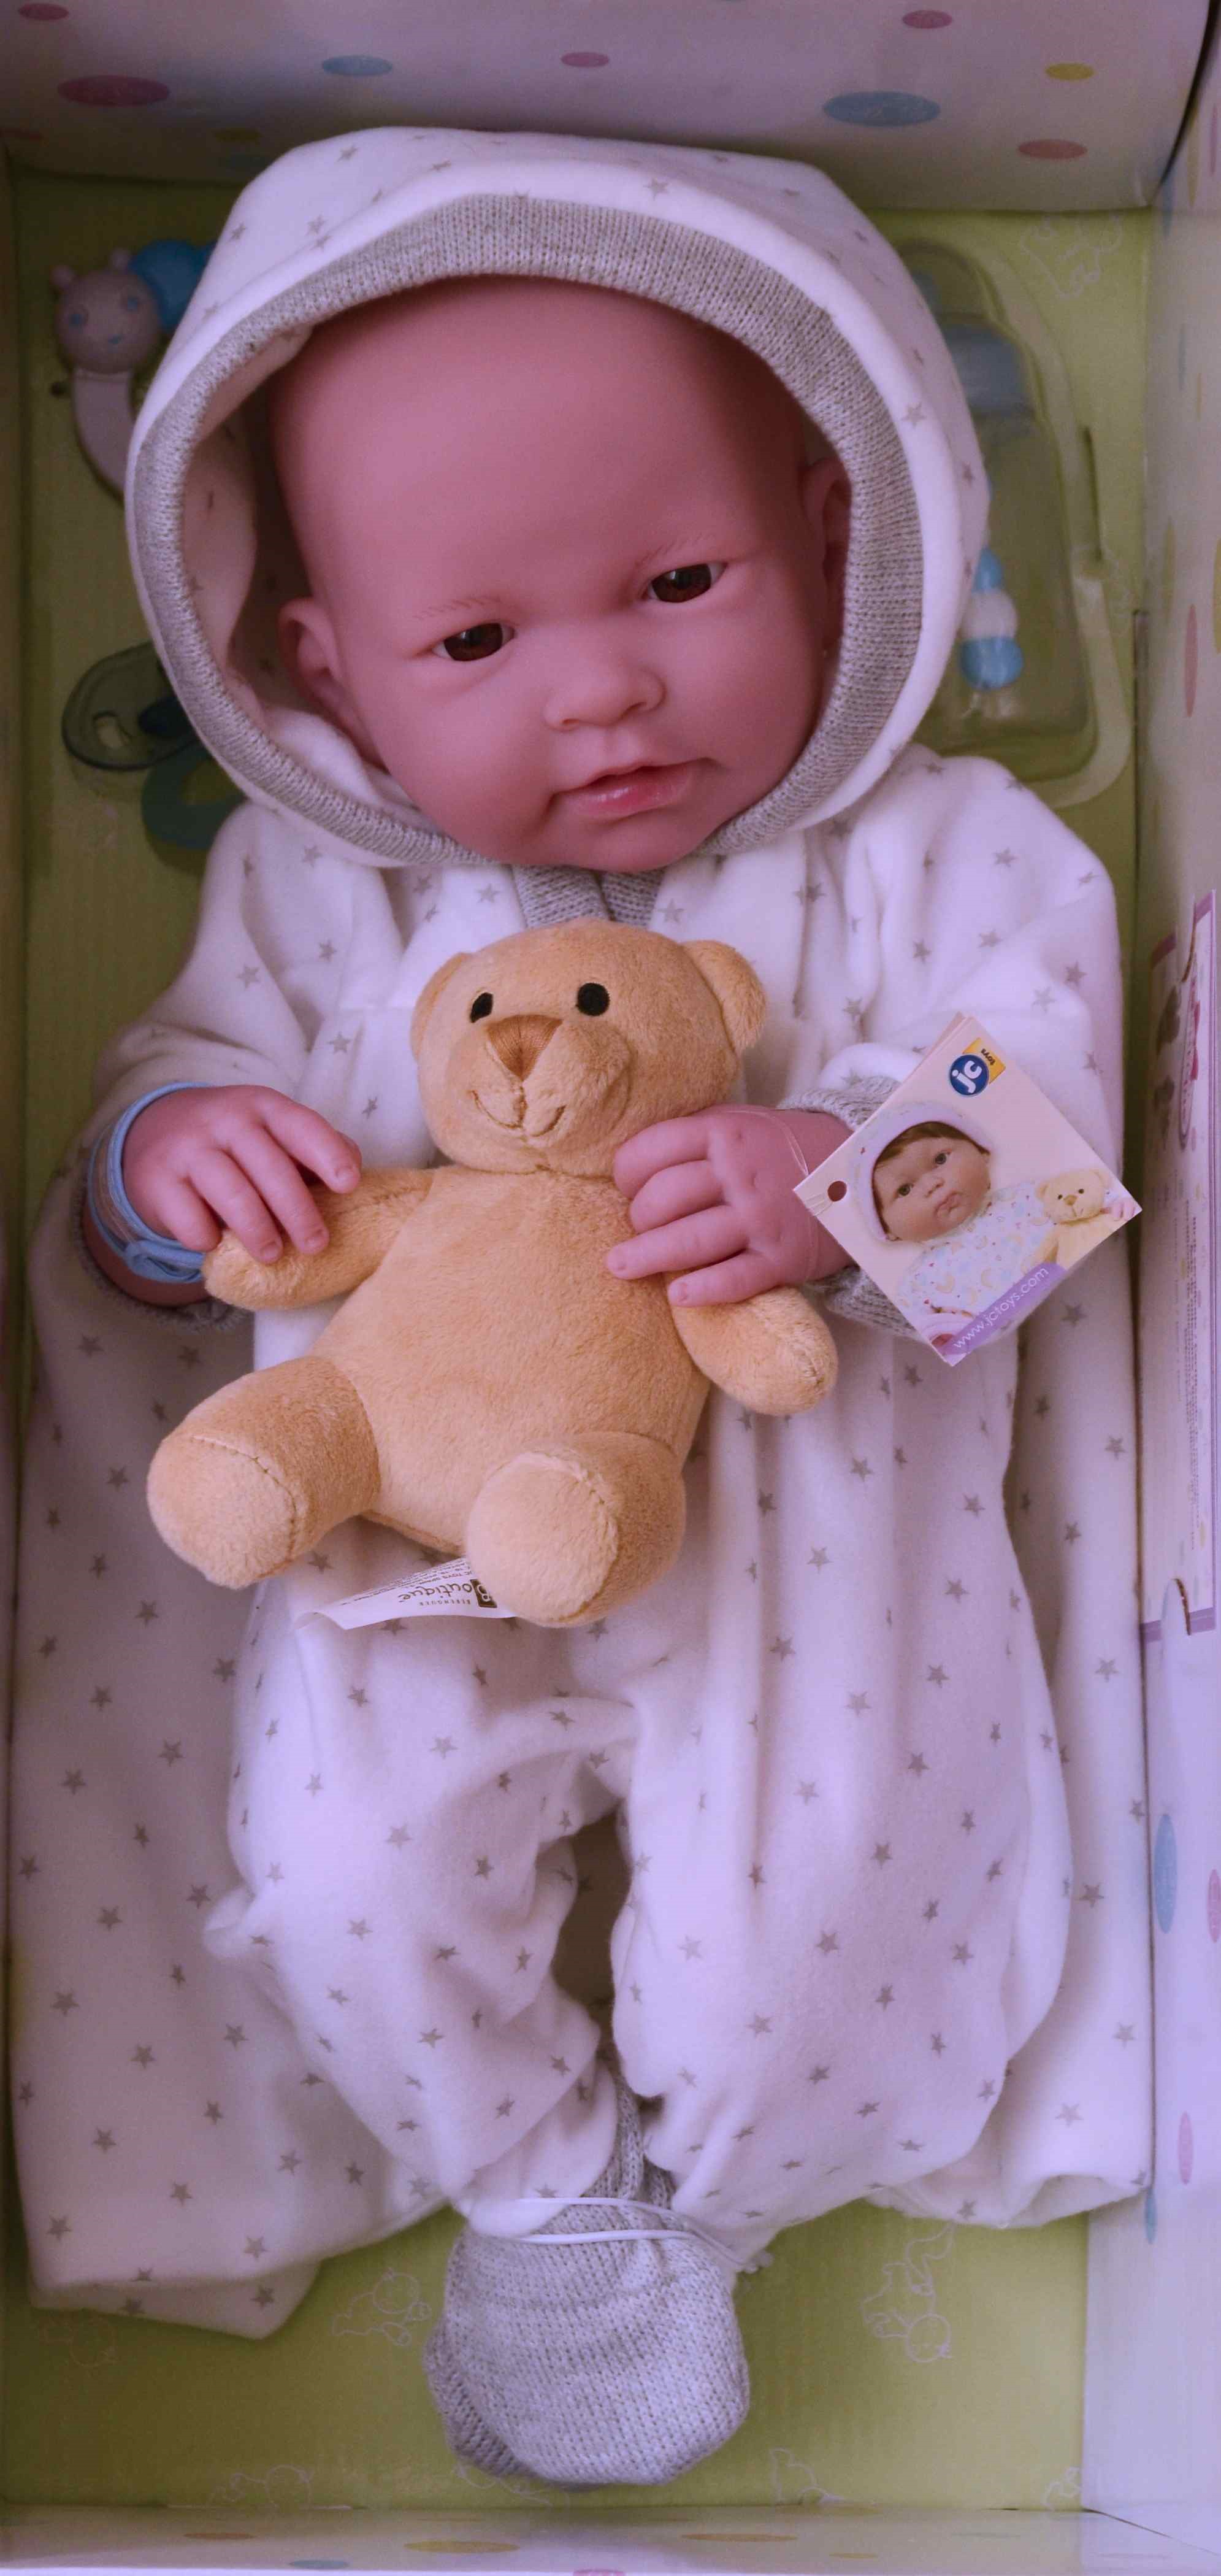 Realistické miminko - chlapeček Andrej od firmy Berenguer